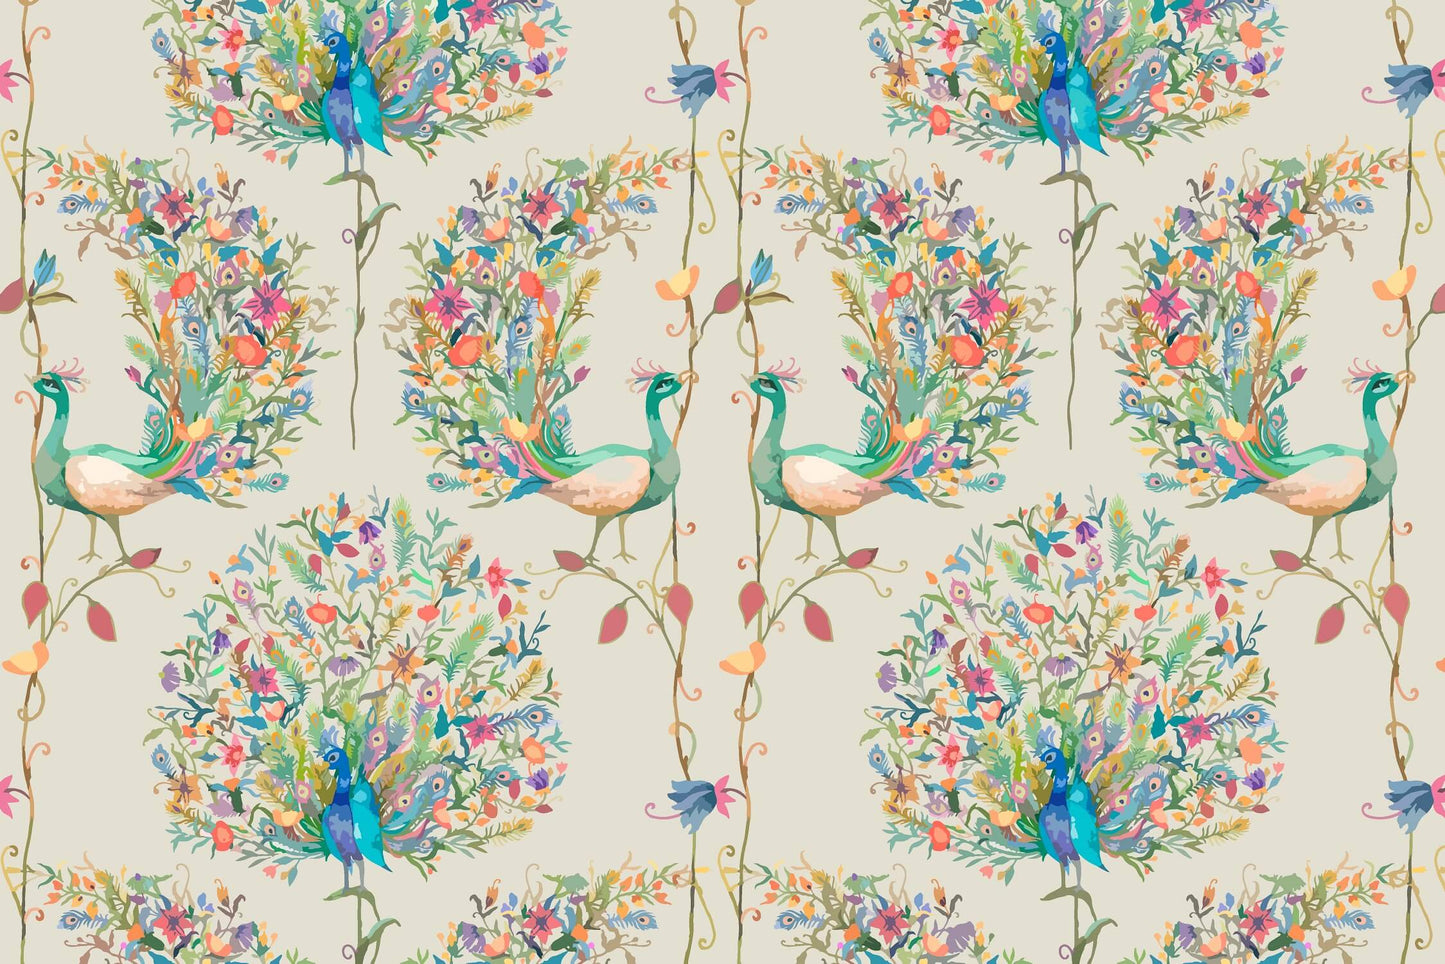 Peacock and Flowers Watercolor Mural Wallpaper (SqM)